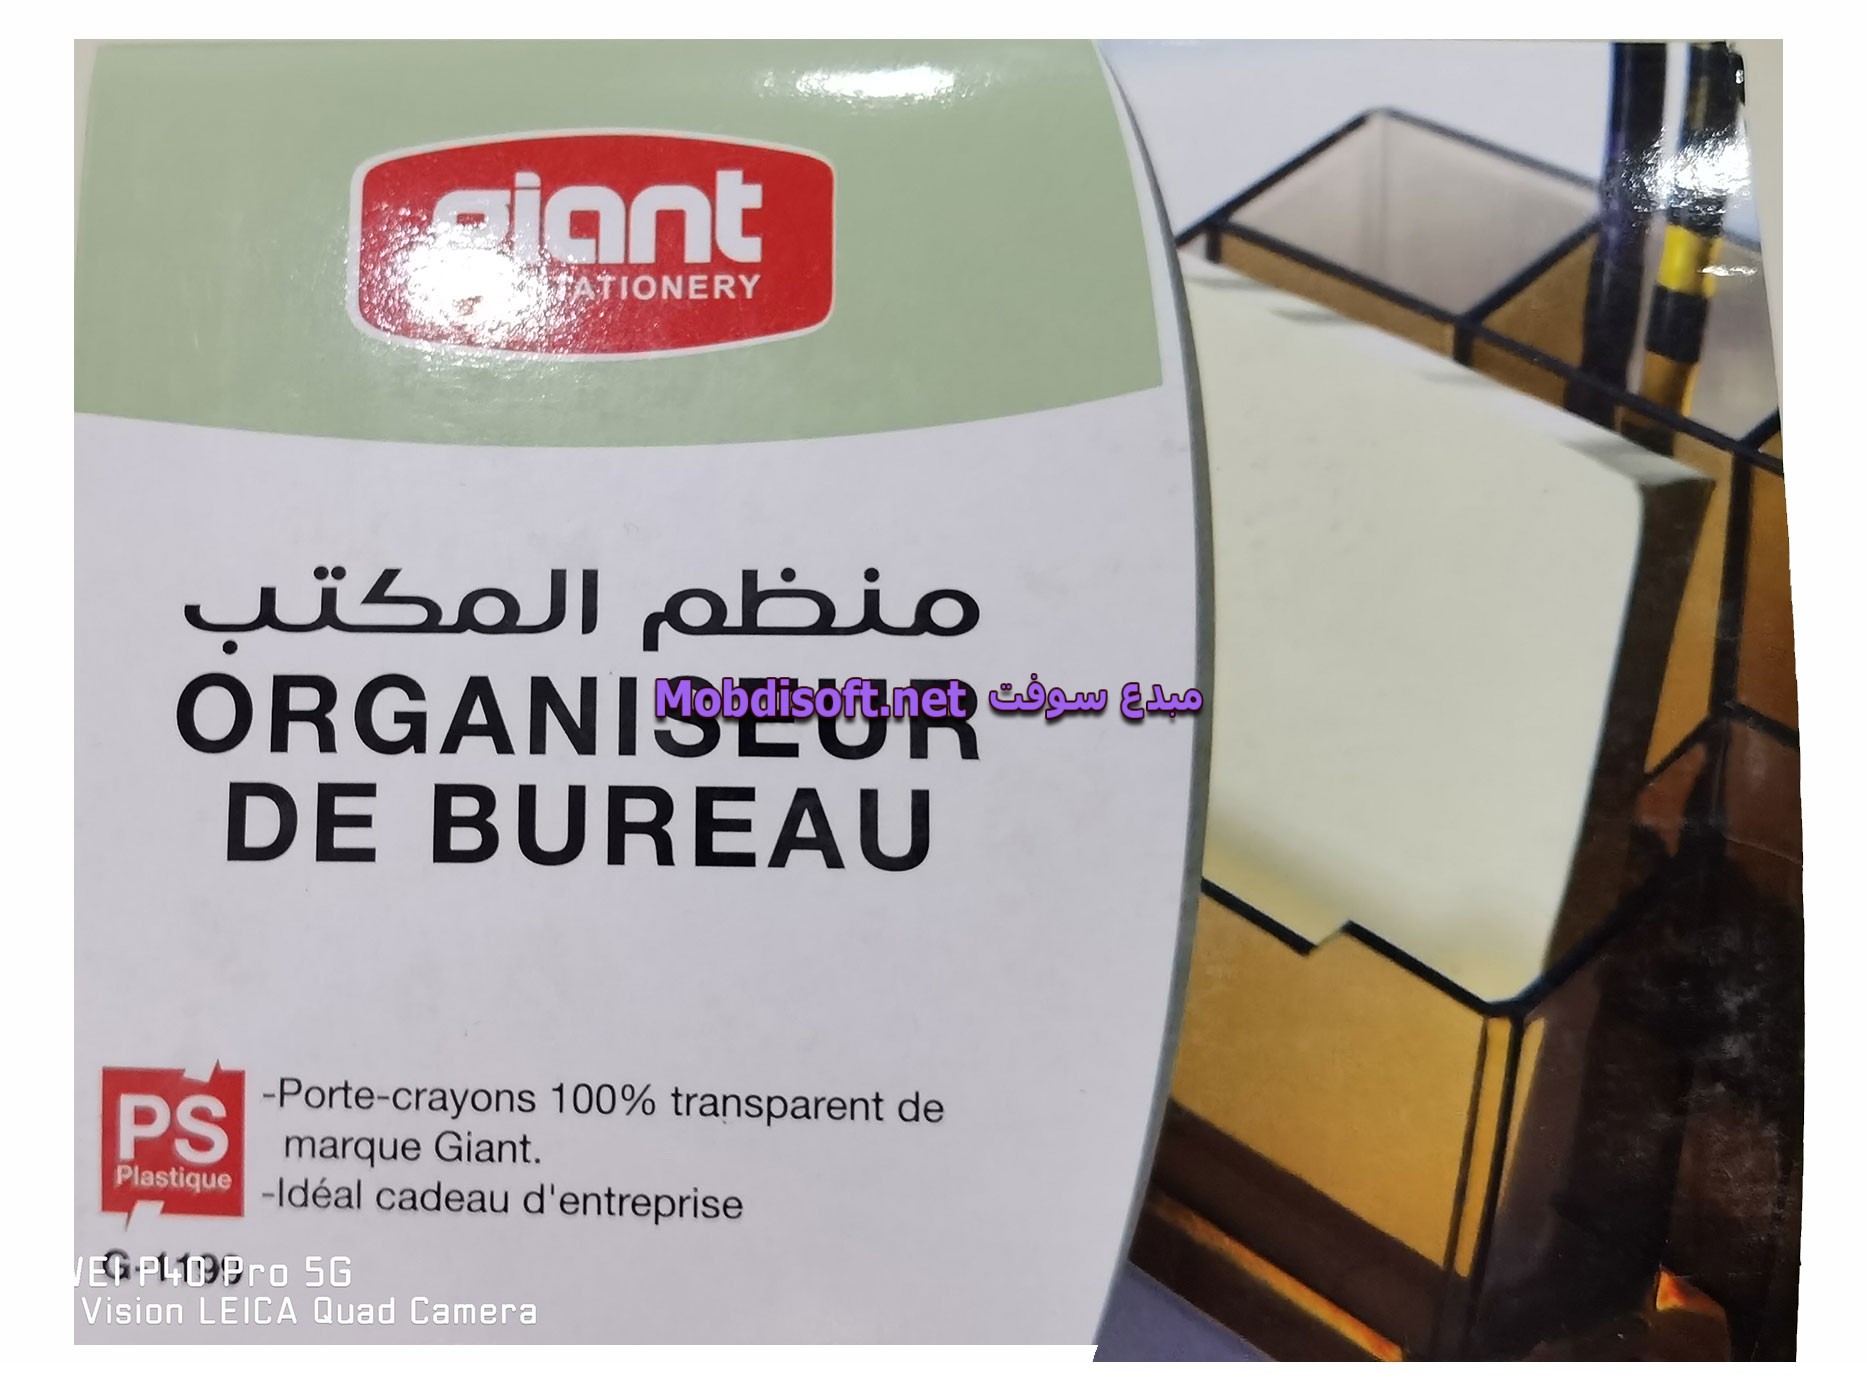 ORGANISSEUR DE BUREAU EN PLAST GIANT G-1199 